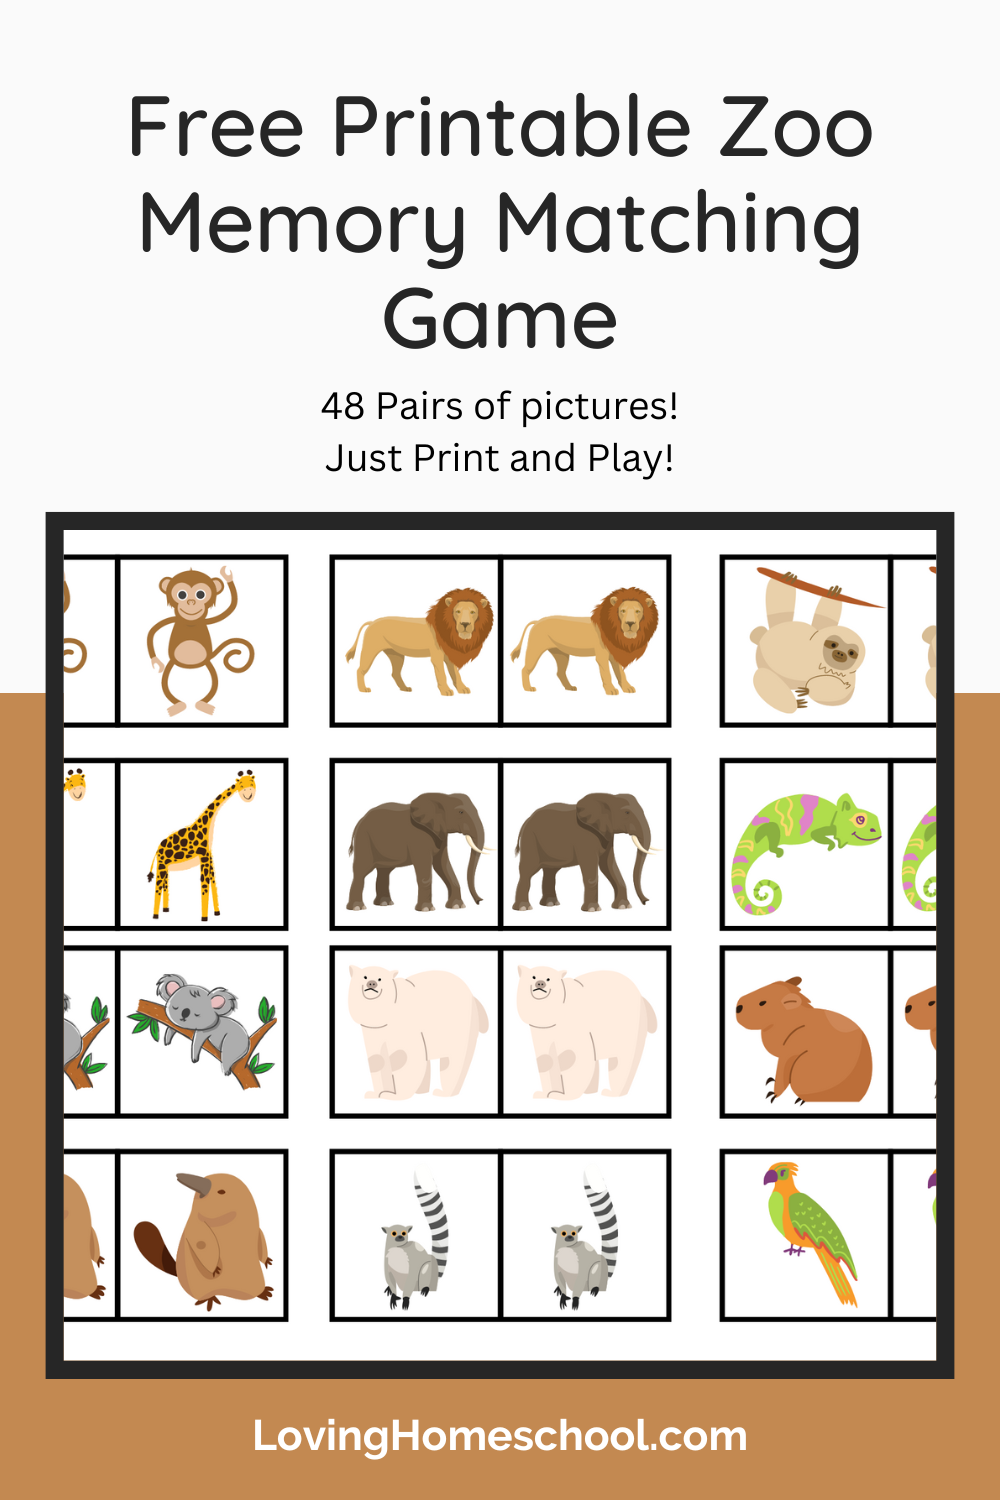 Free Printable Zoo Memory Matching Game Pinterest Pin